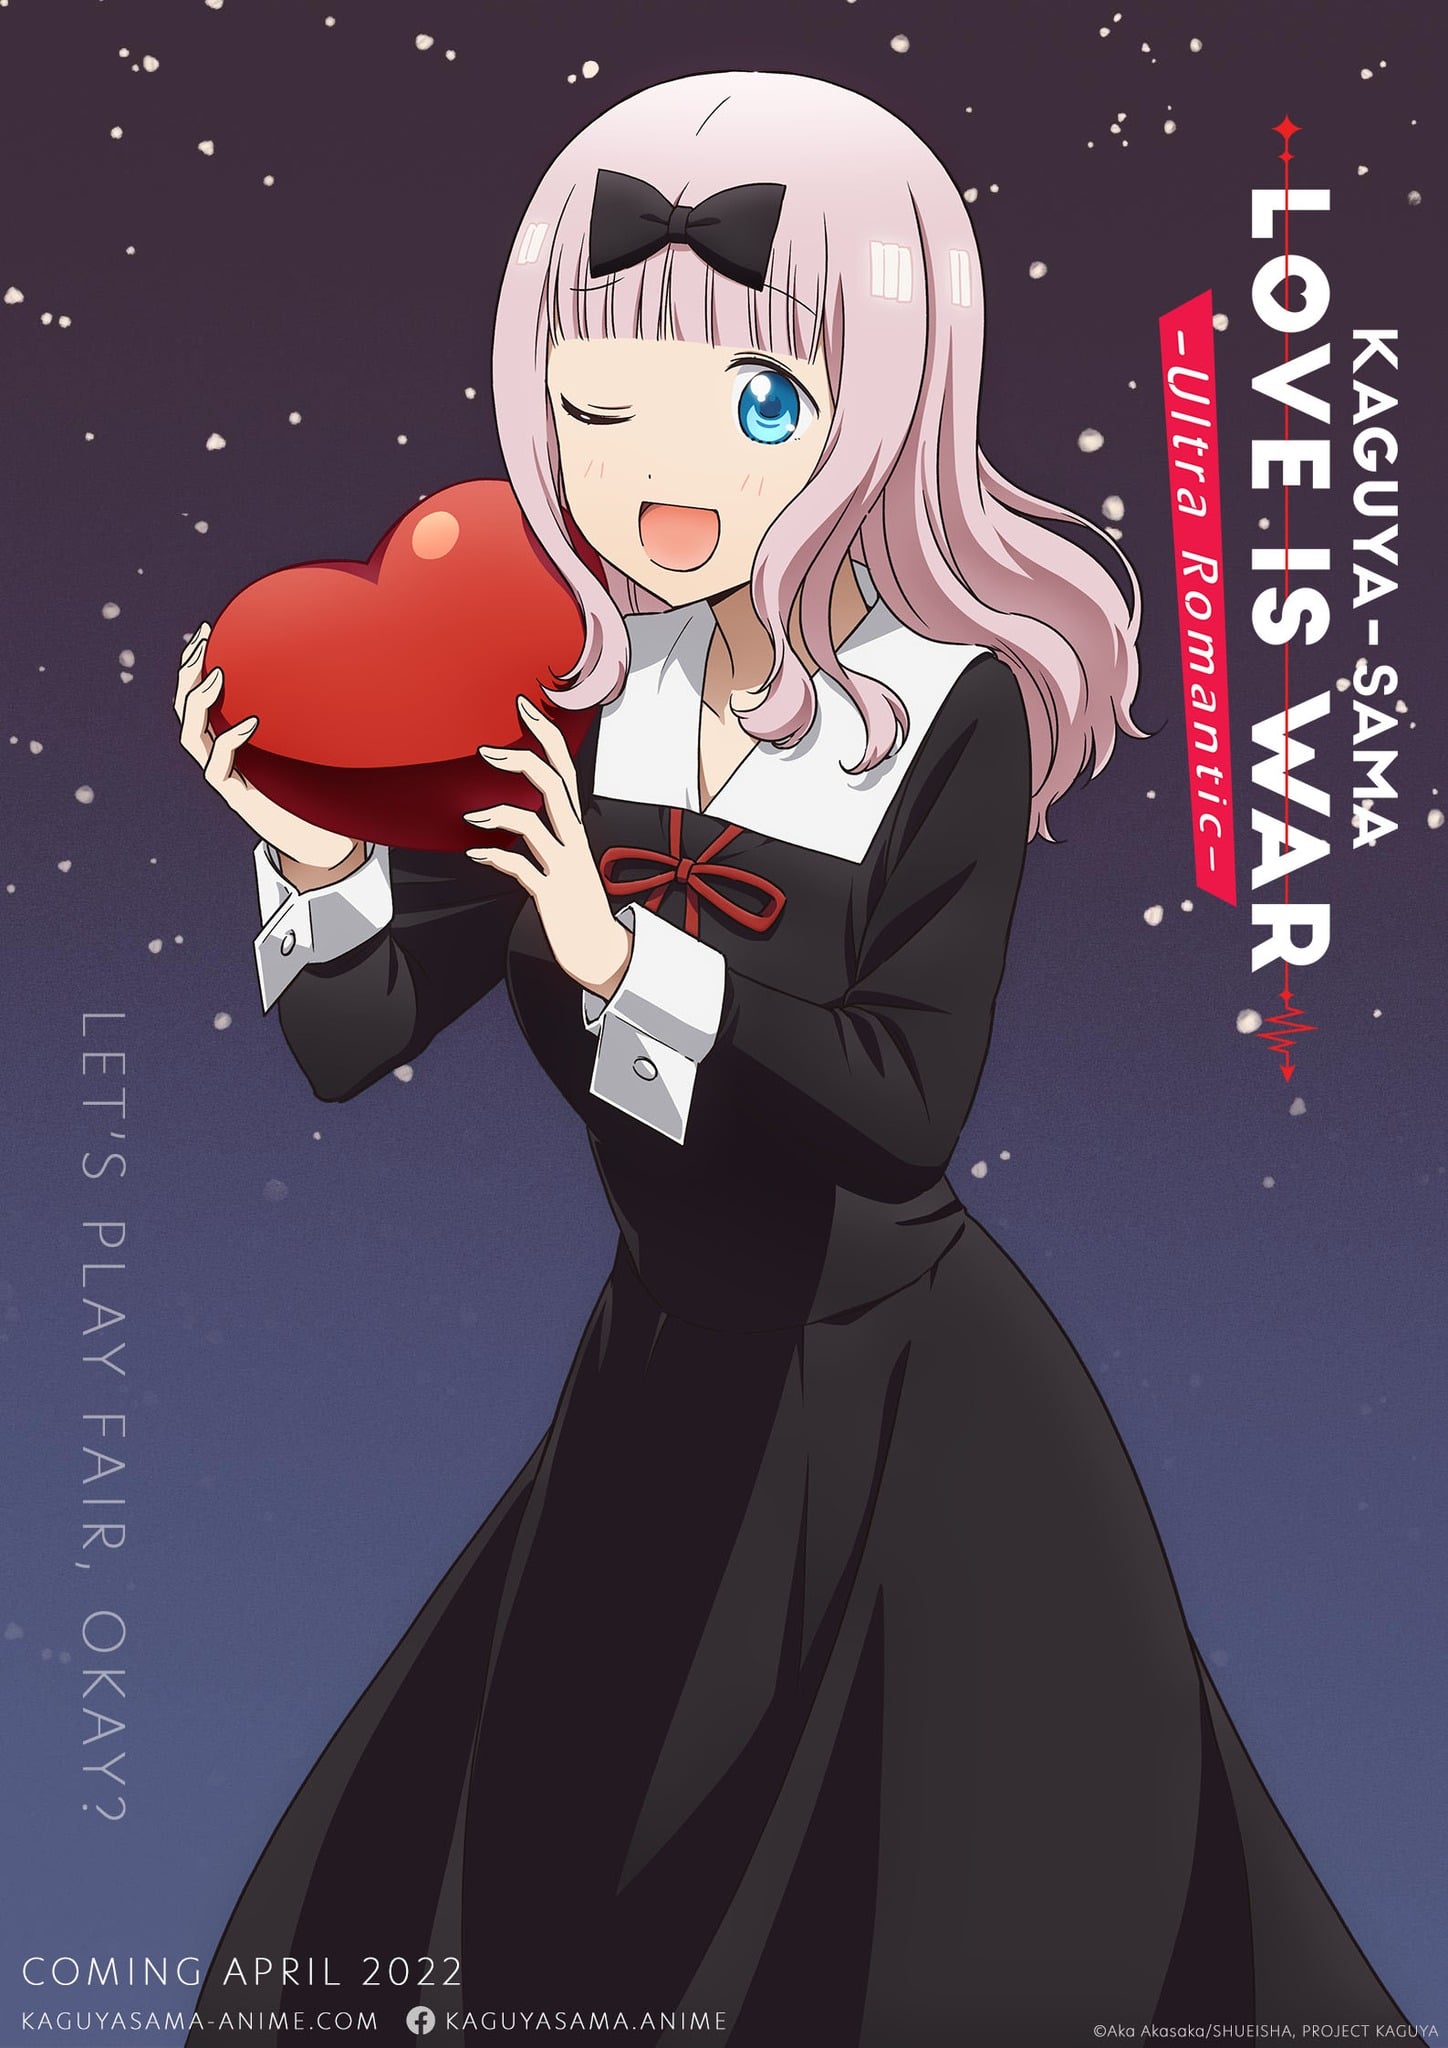 Kaguya-sama wa Kokurasetai: Love Is War Official Art Fan Book, Akasaka Aka